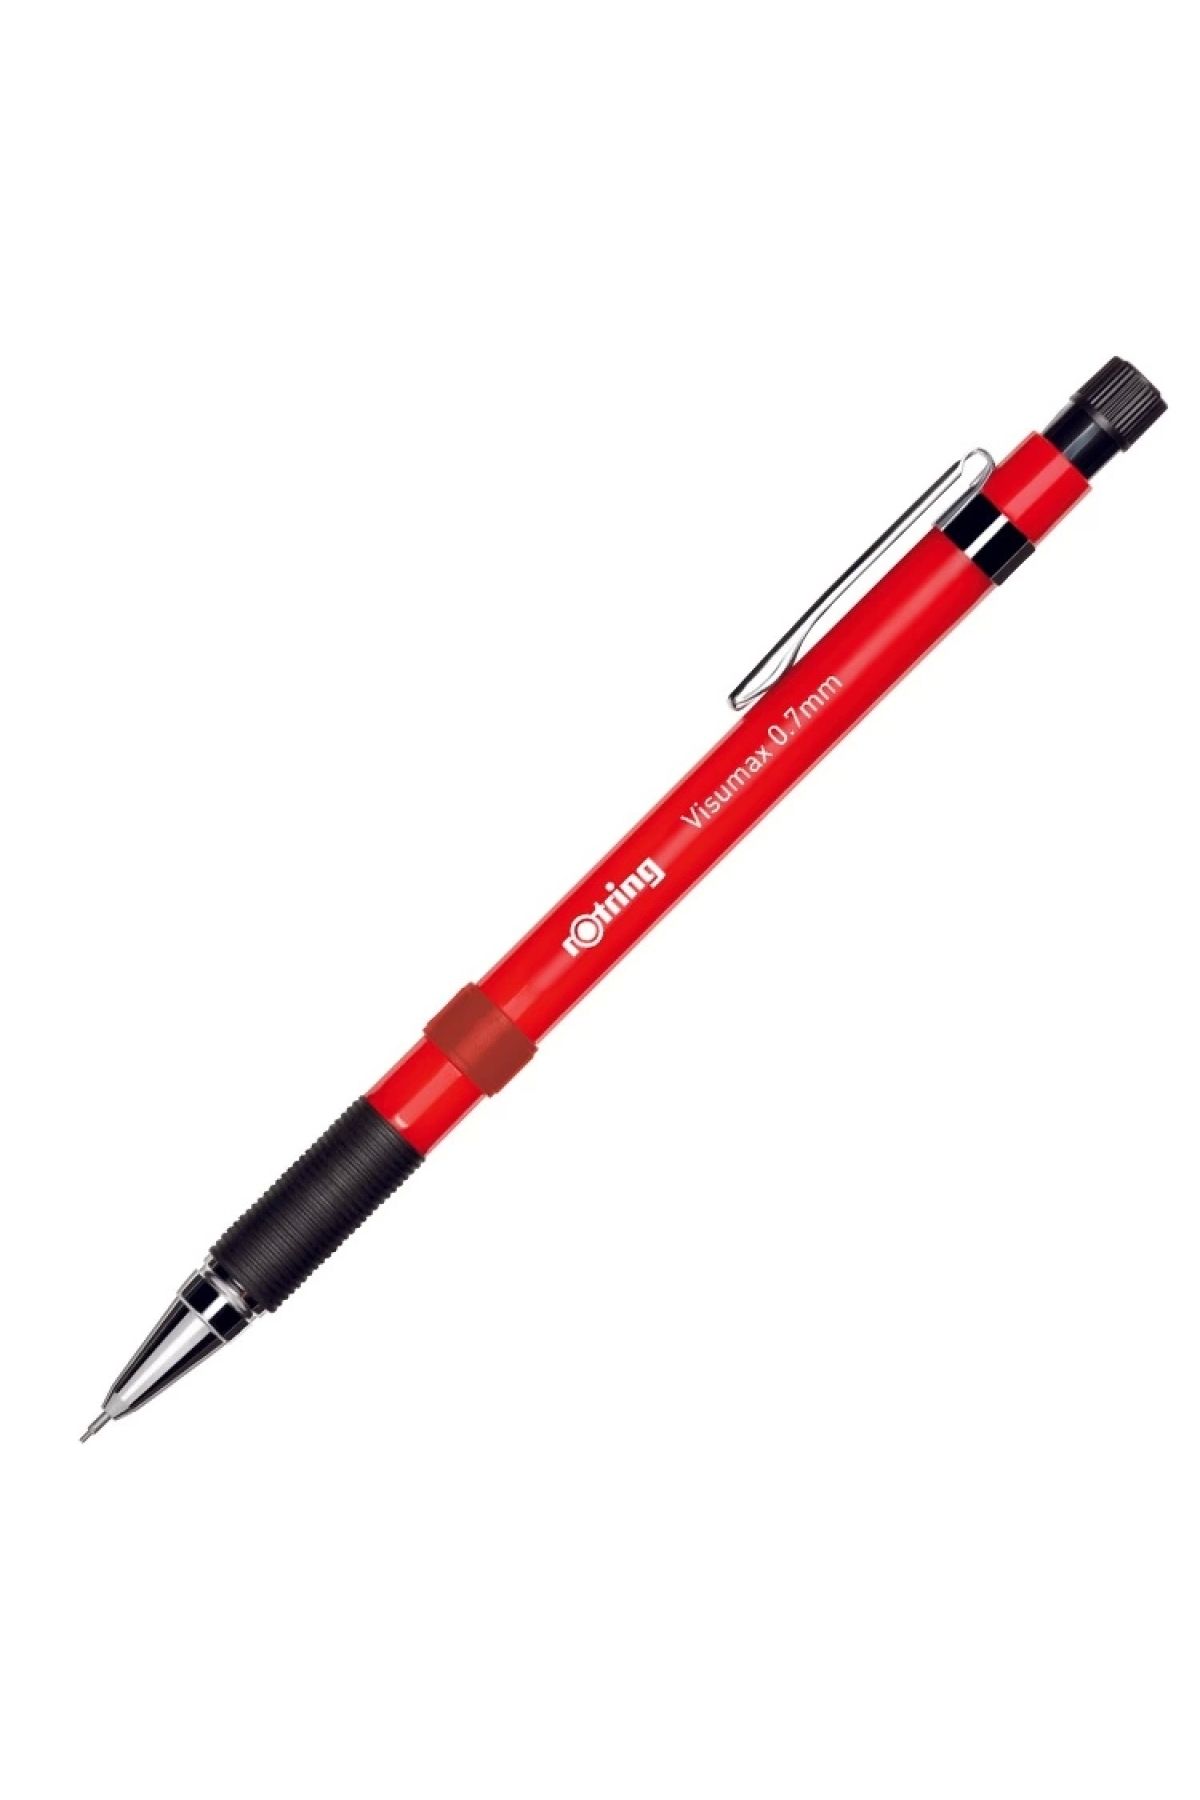 Rotring Versatıl Kalem 0.7 Visumax Kırmızı 2089098